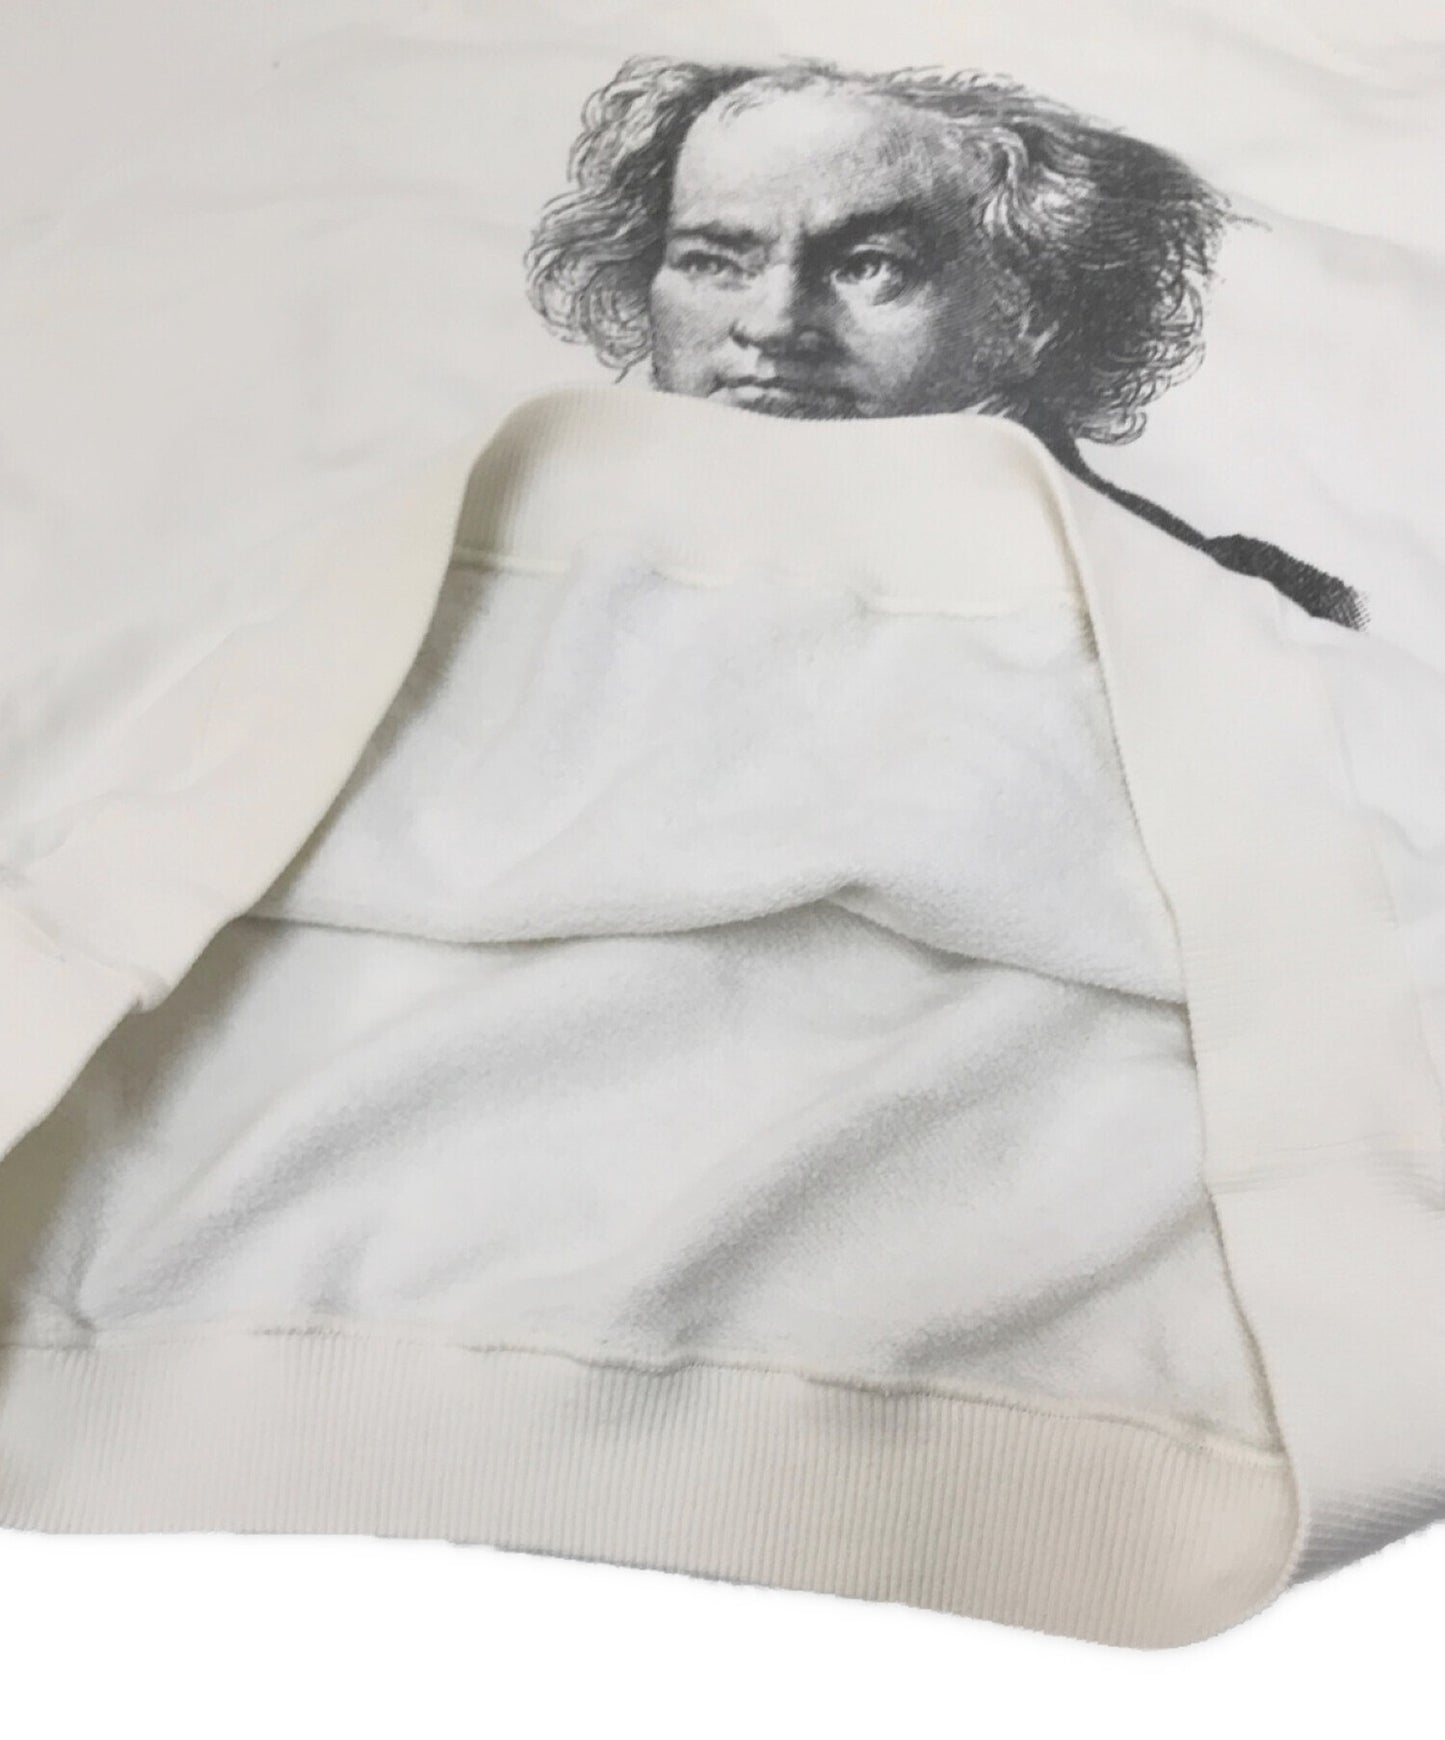 沐浴猿旧]印刷运动衫贝多芬船员脖子早期标签永远不会杀死猿